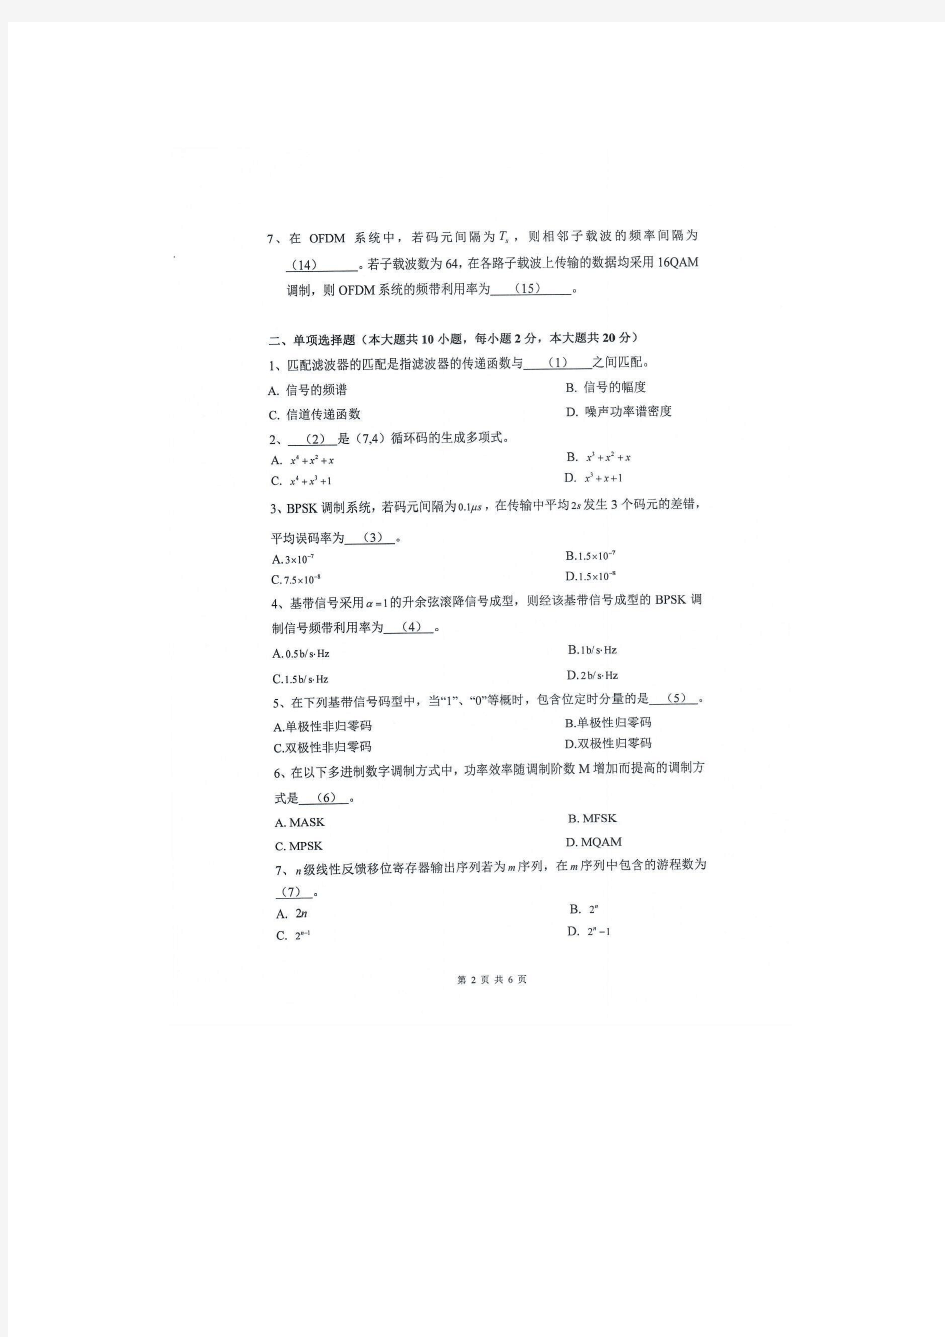 2020年杭州电子科技大学考研试题通信原理